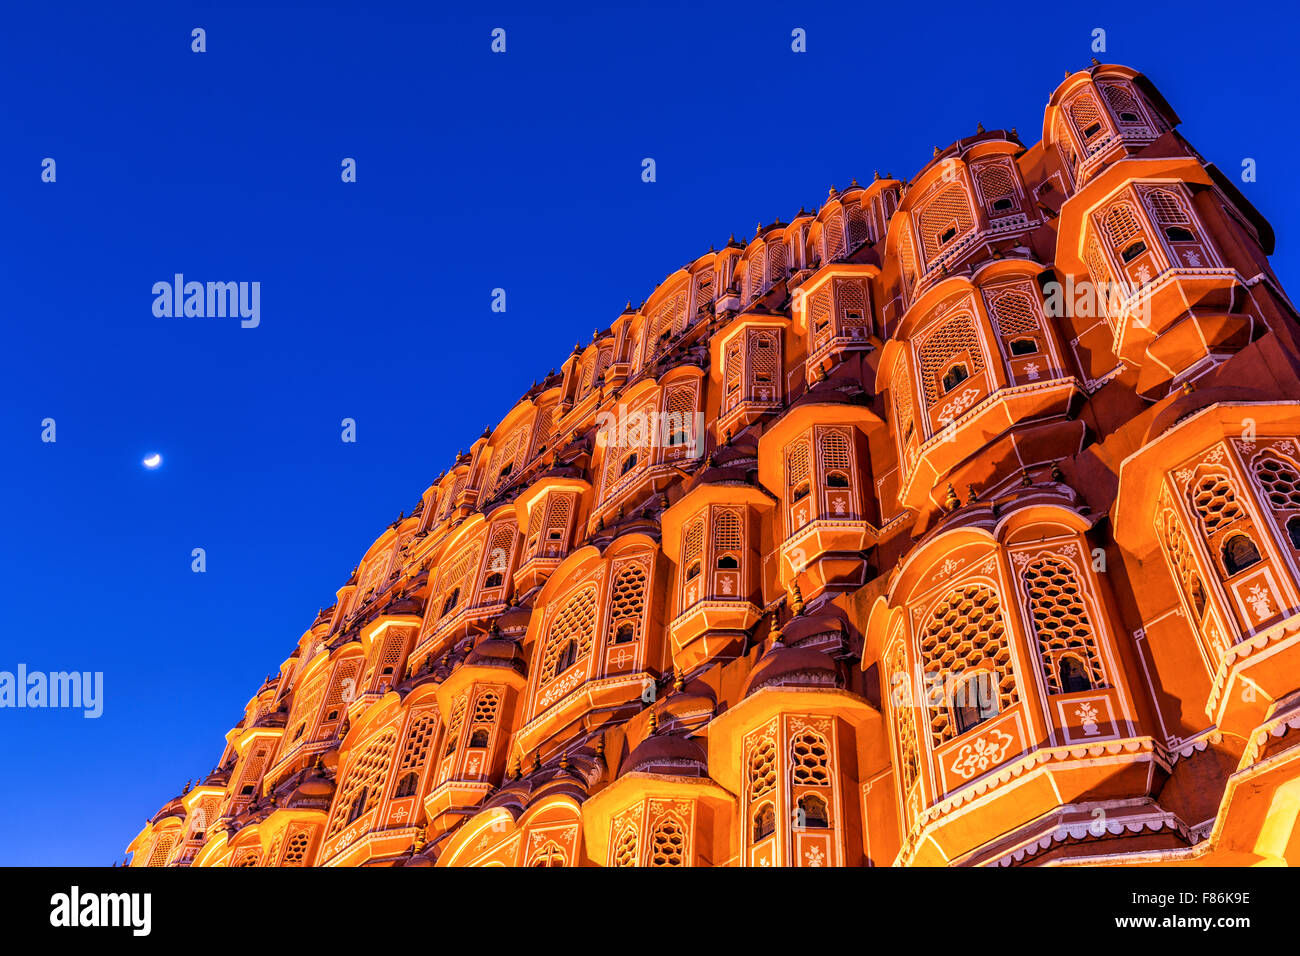 Night shot of Hawa Mahal, Palace of the Winds, Jaipur, Rajasthan, India Stock Photo